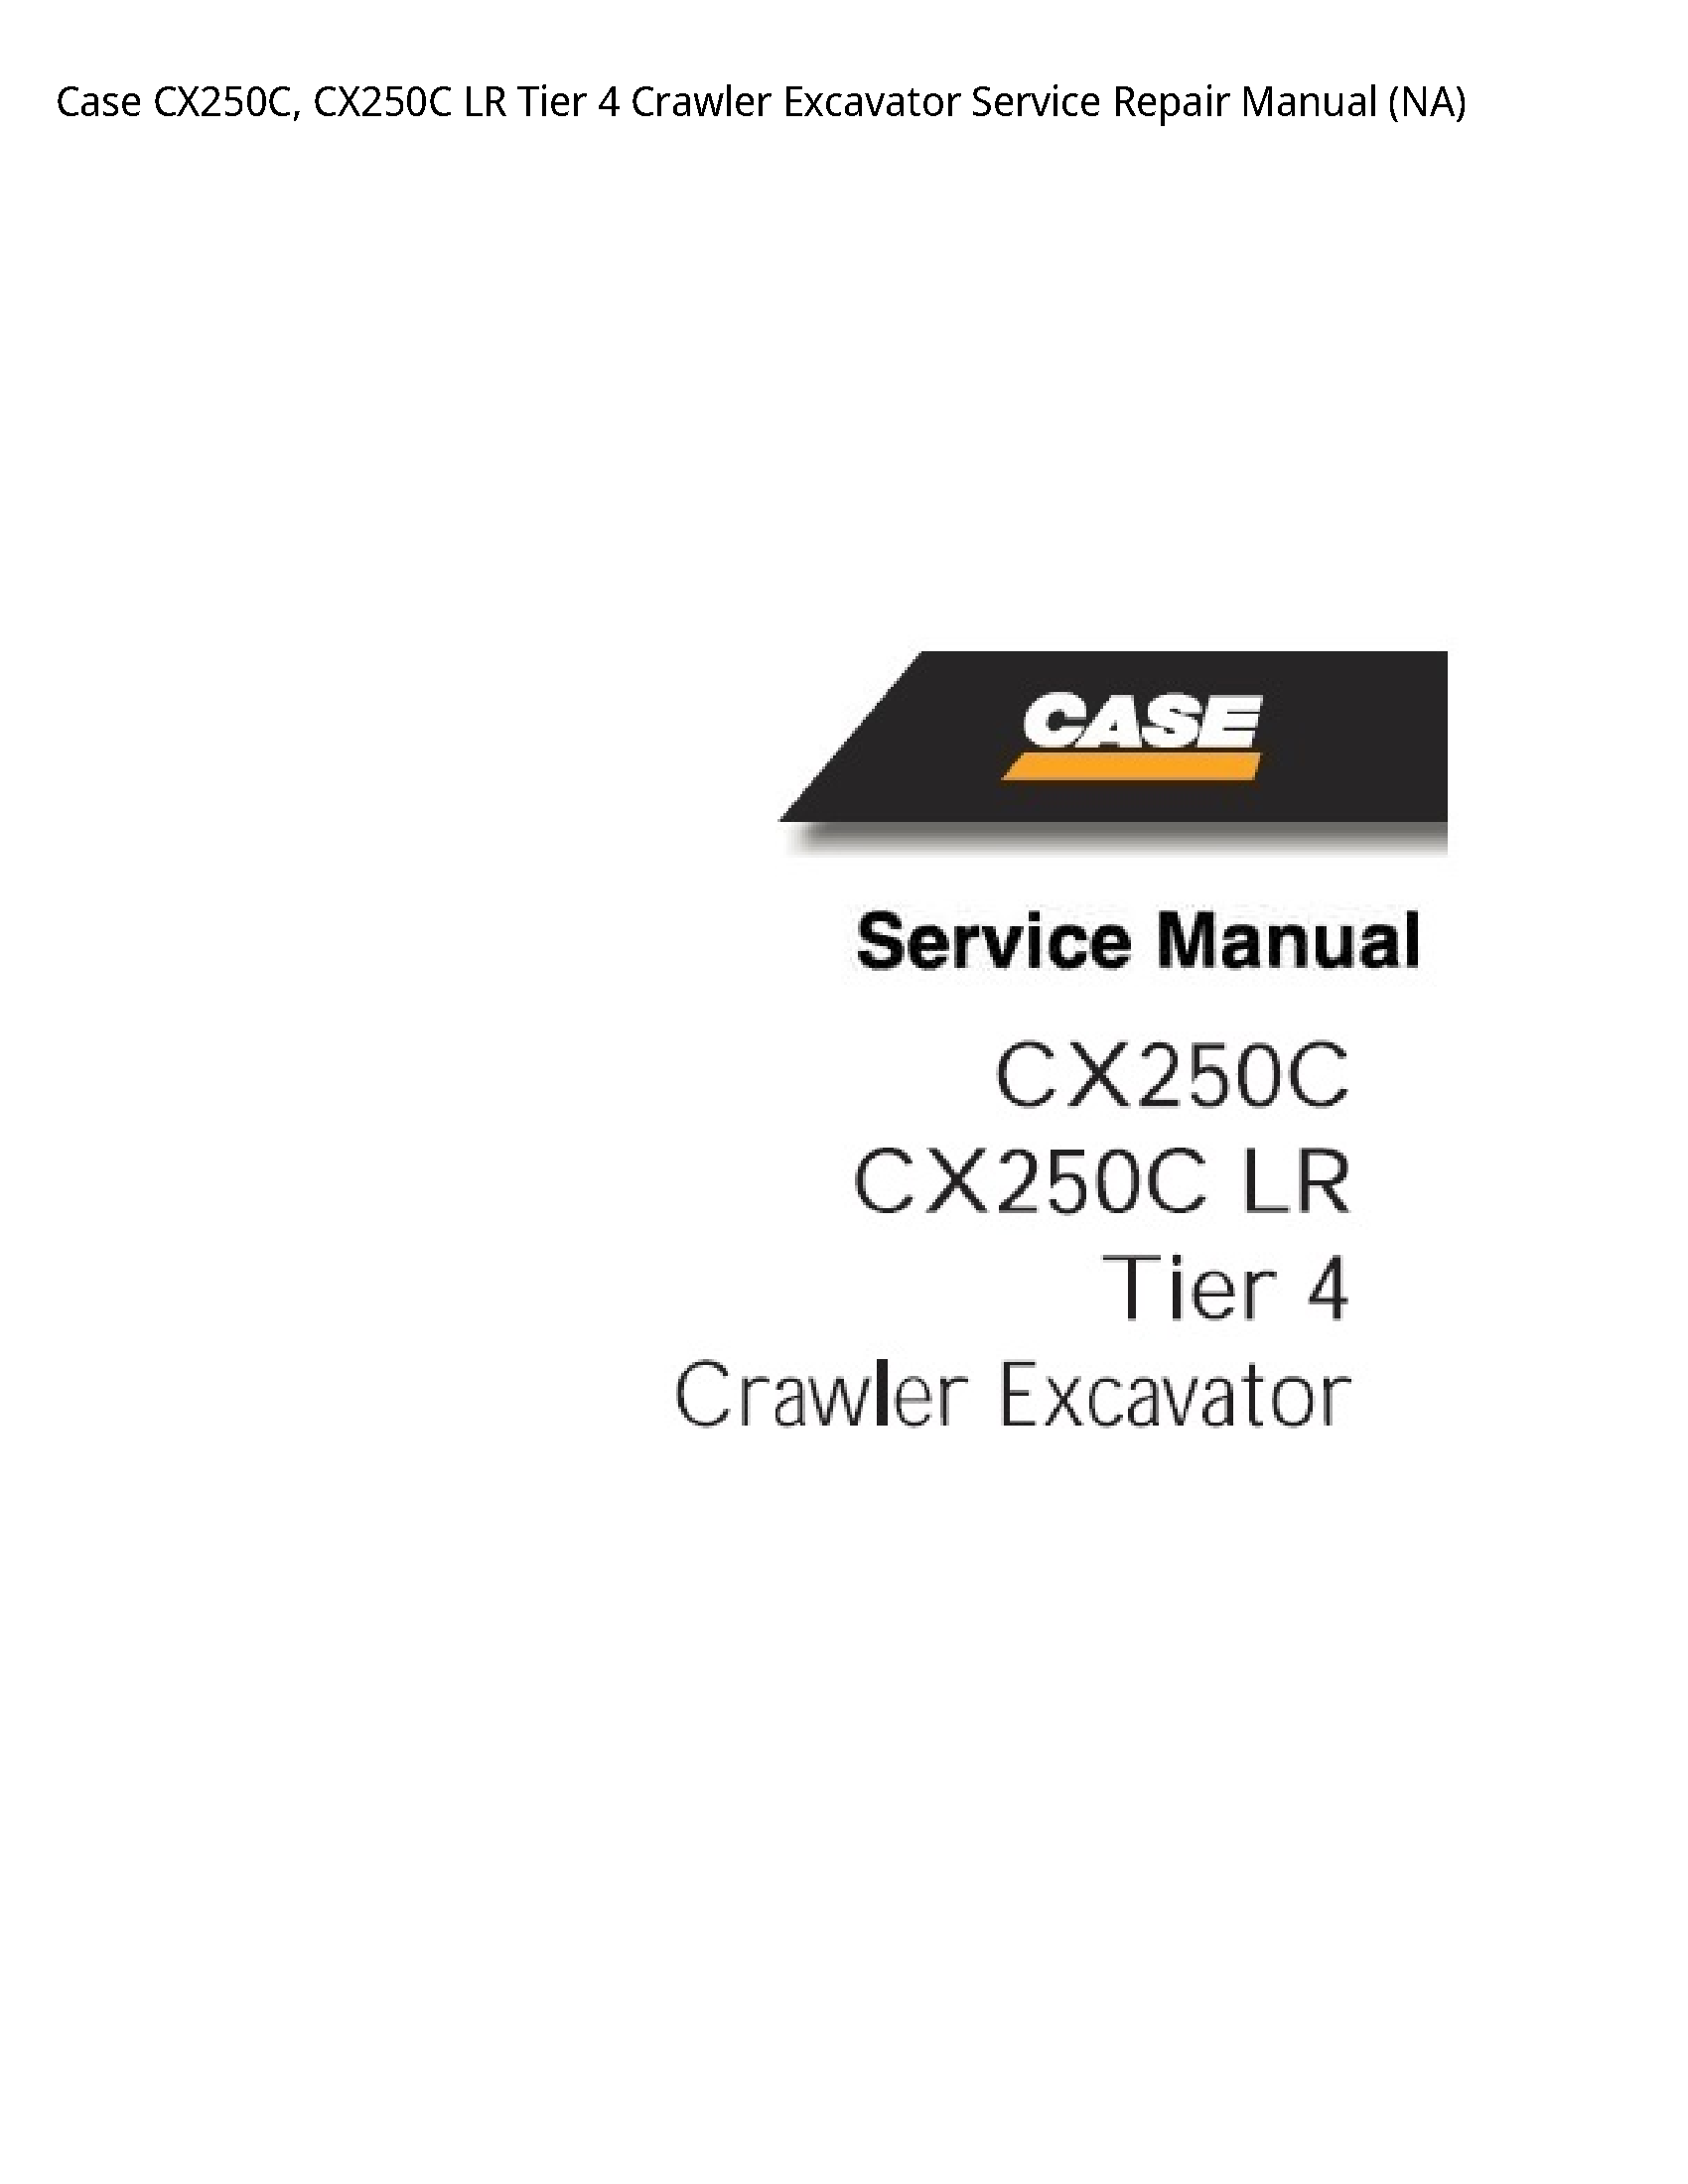 Case/Case IH CX250C LR Tier Crawler Excavator manual